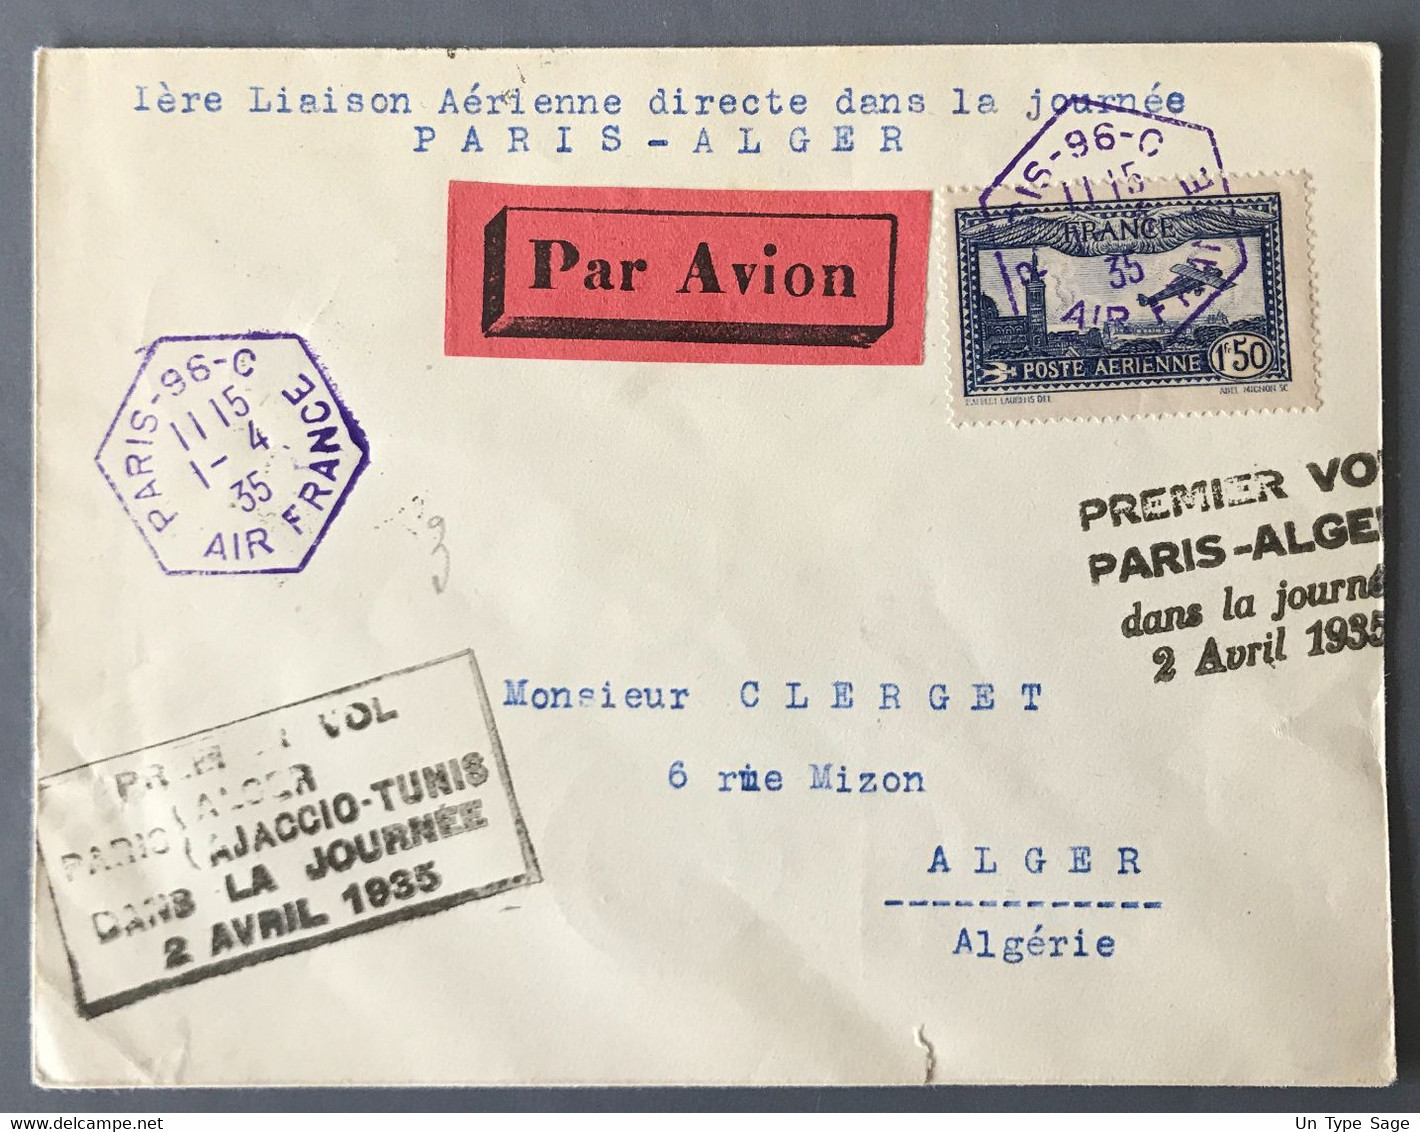 France PA N°6 Sur Enveloppe De Paris 1.4.1935 - Premier Vol Paris-Alger Dans La Journée 2 Avril 1935 - (W1115) - 1960-.... Storia Postale